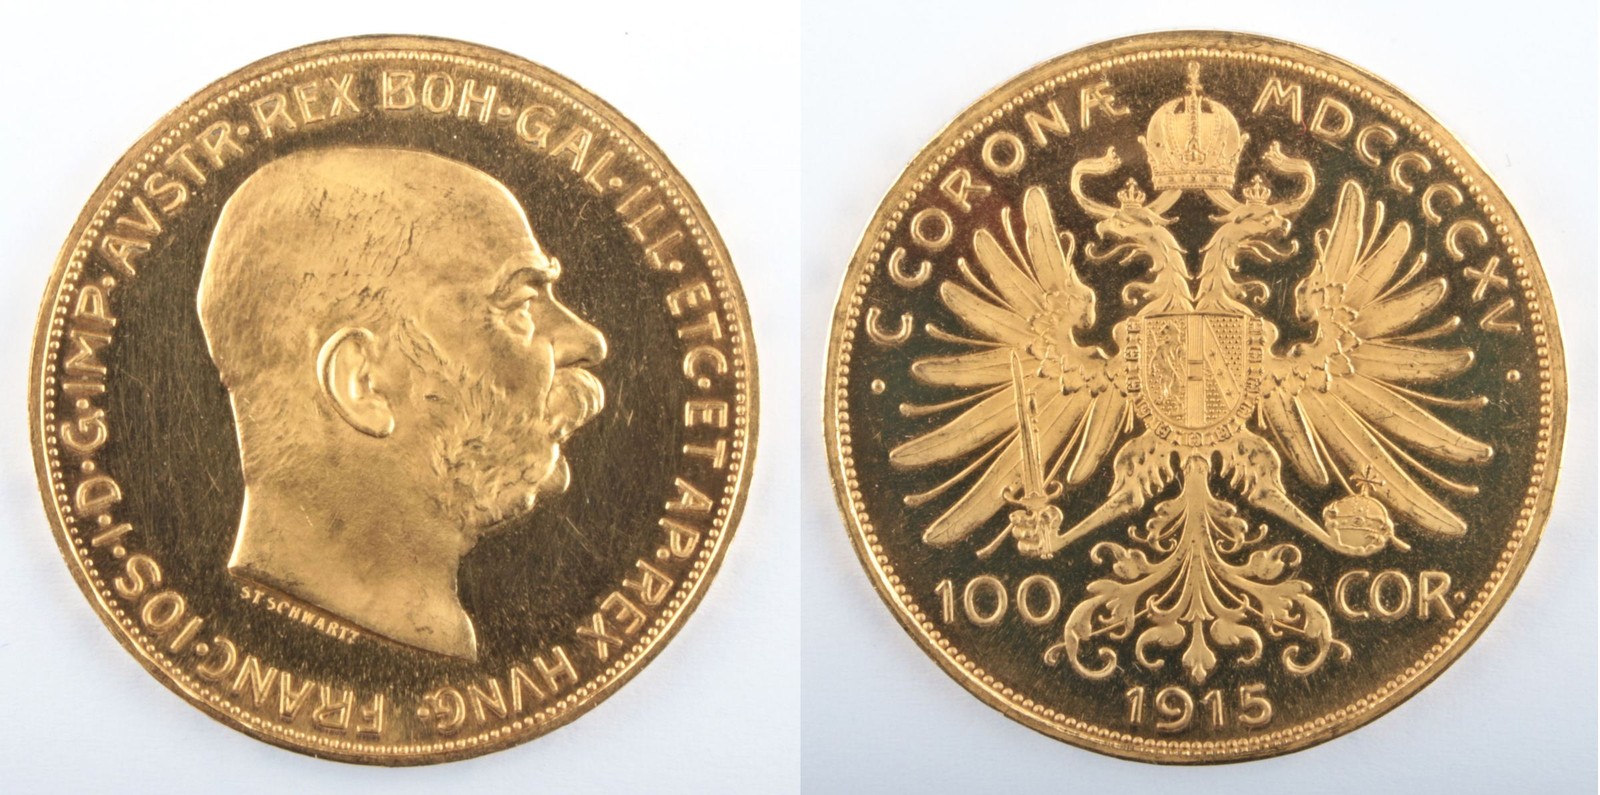 Zlatá mince: 100 koruna 1915 - původní ražba